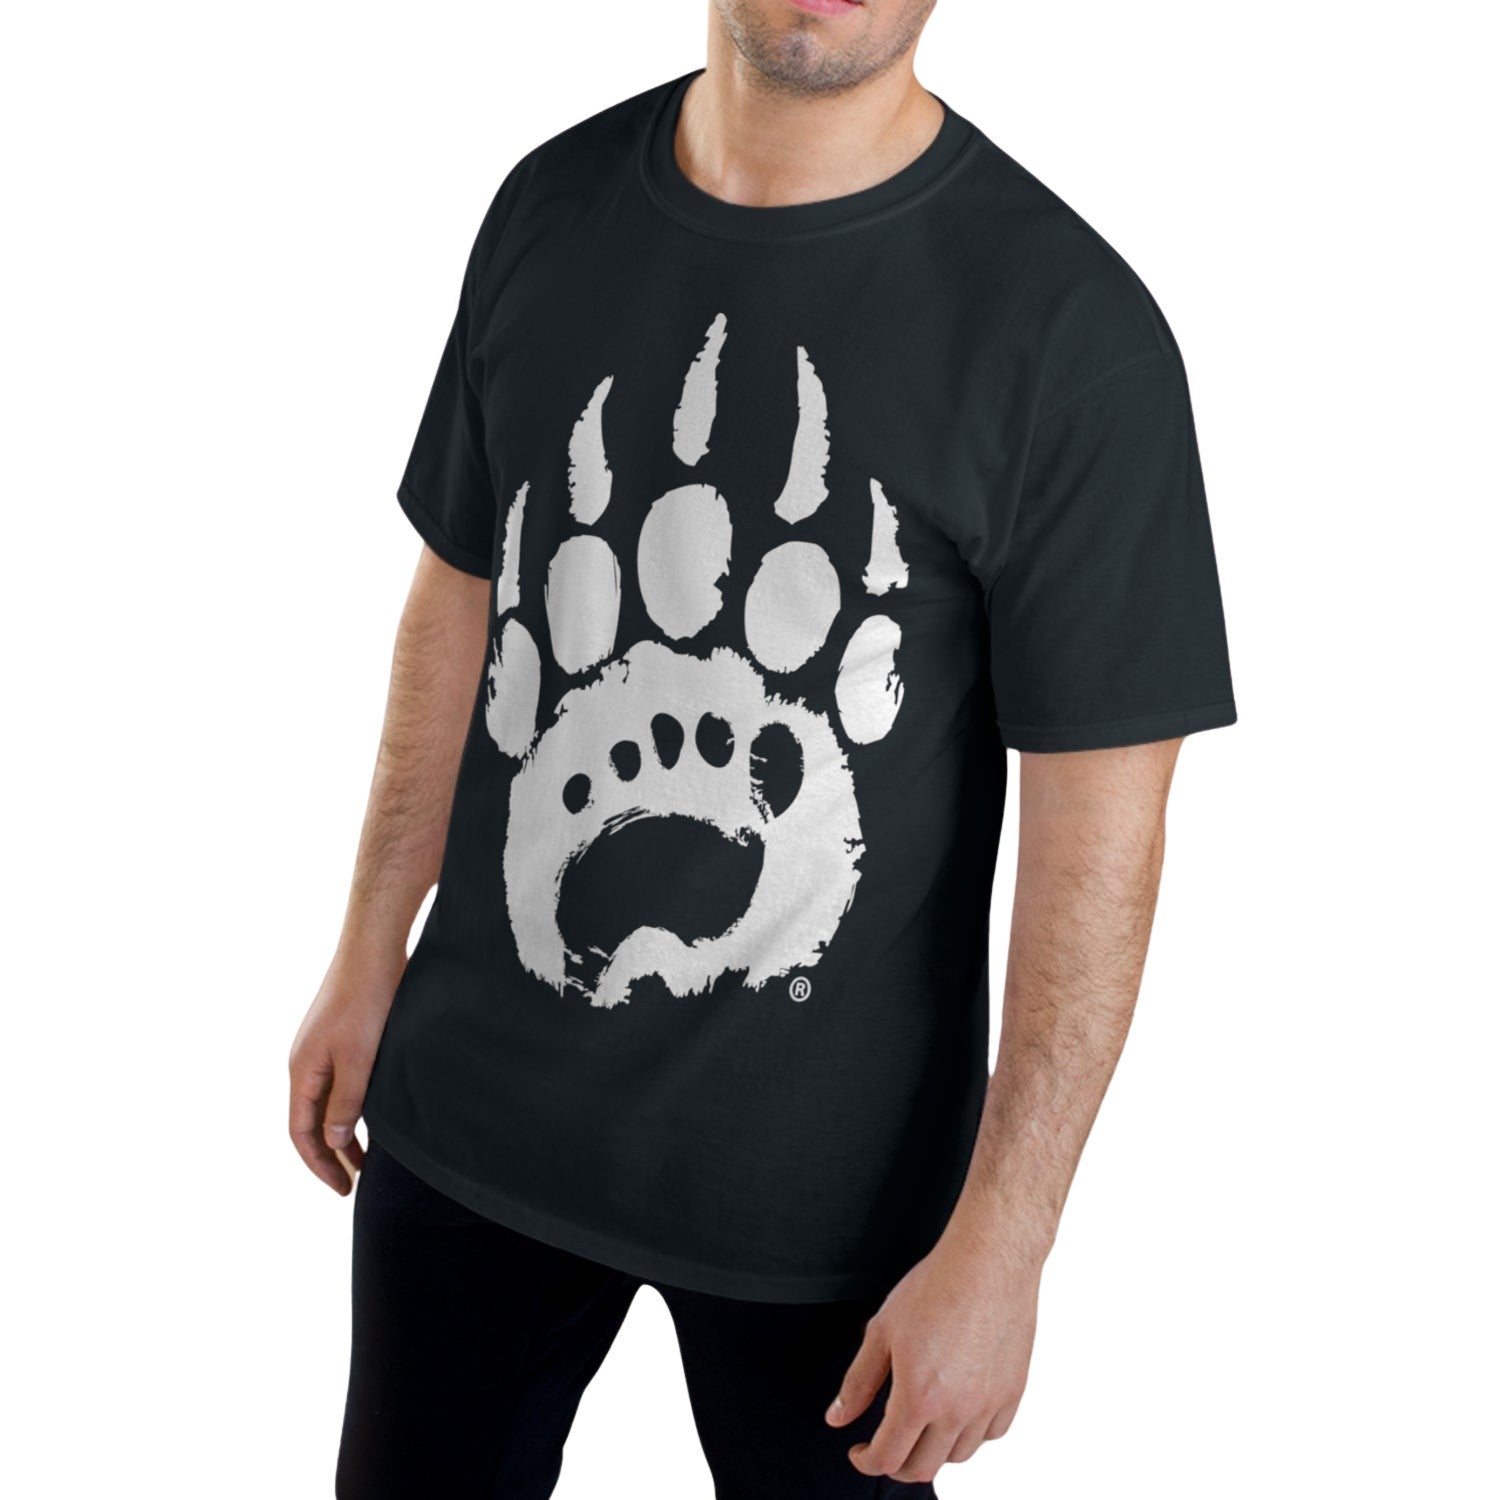 Bearfoot - Bearfoot T - Shirt (Oversized) - Merchandise